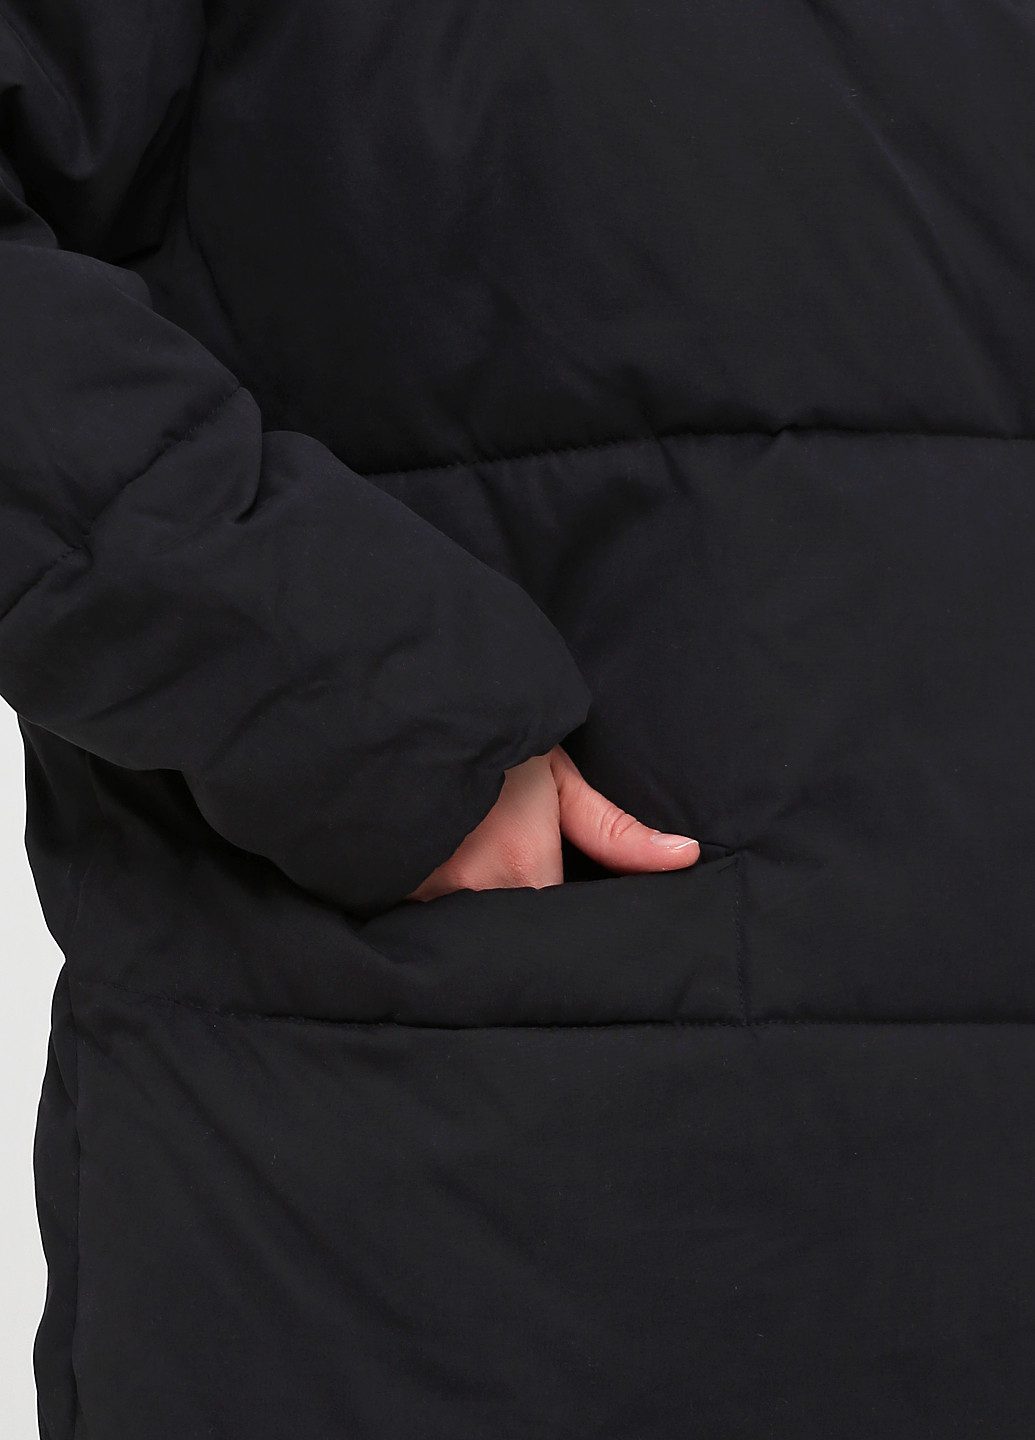 Черная зимняя куртка Monki